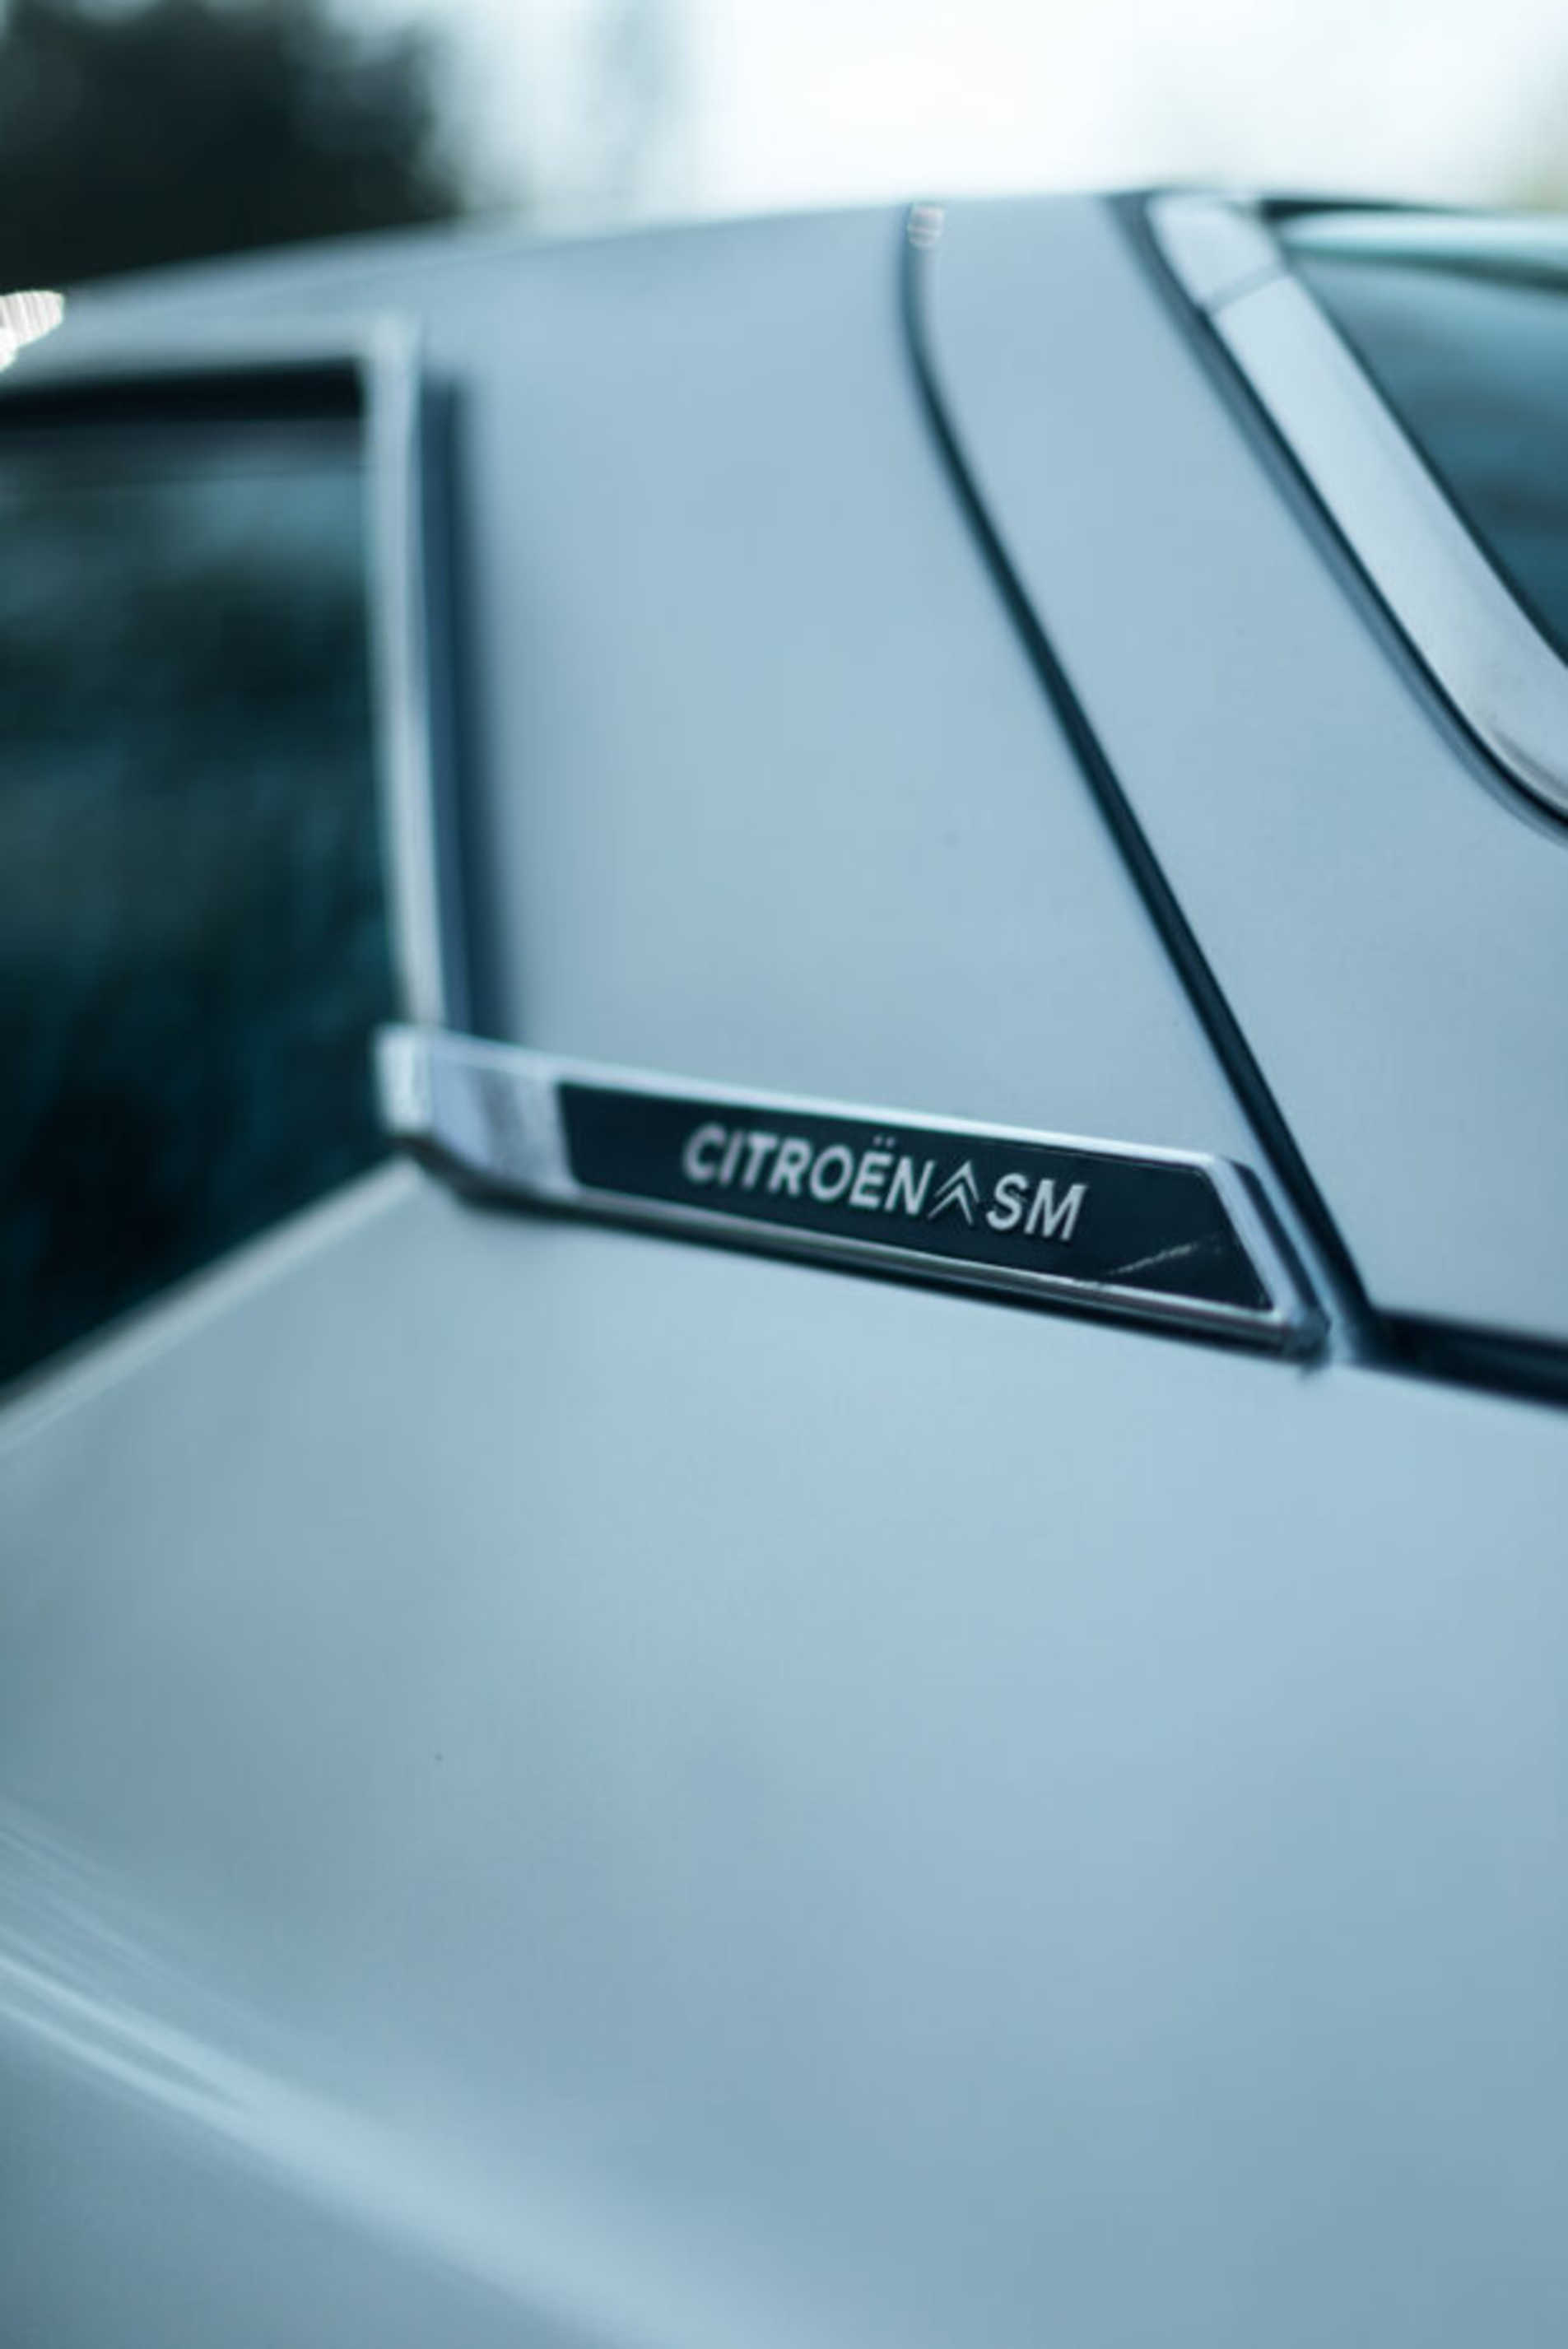 Citroën SM zoom sur la porte arrière